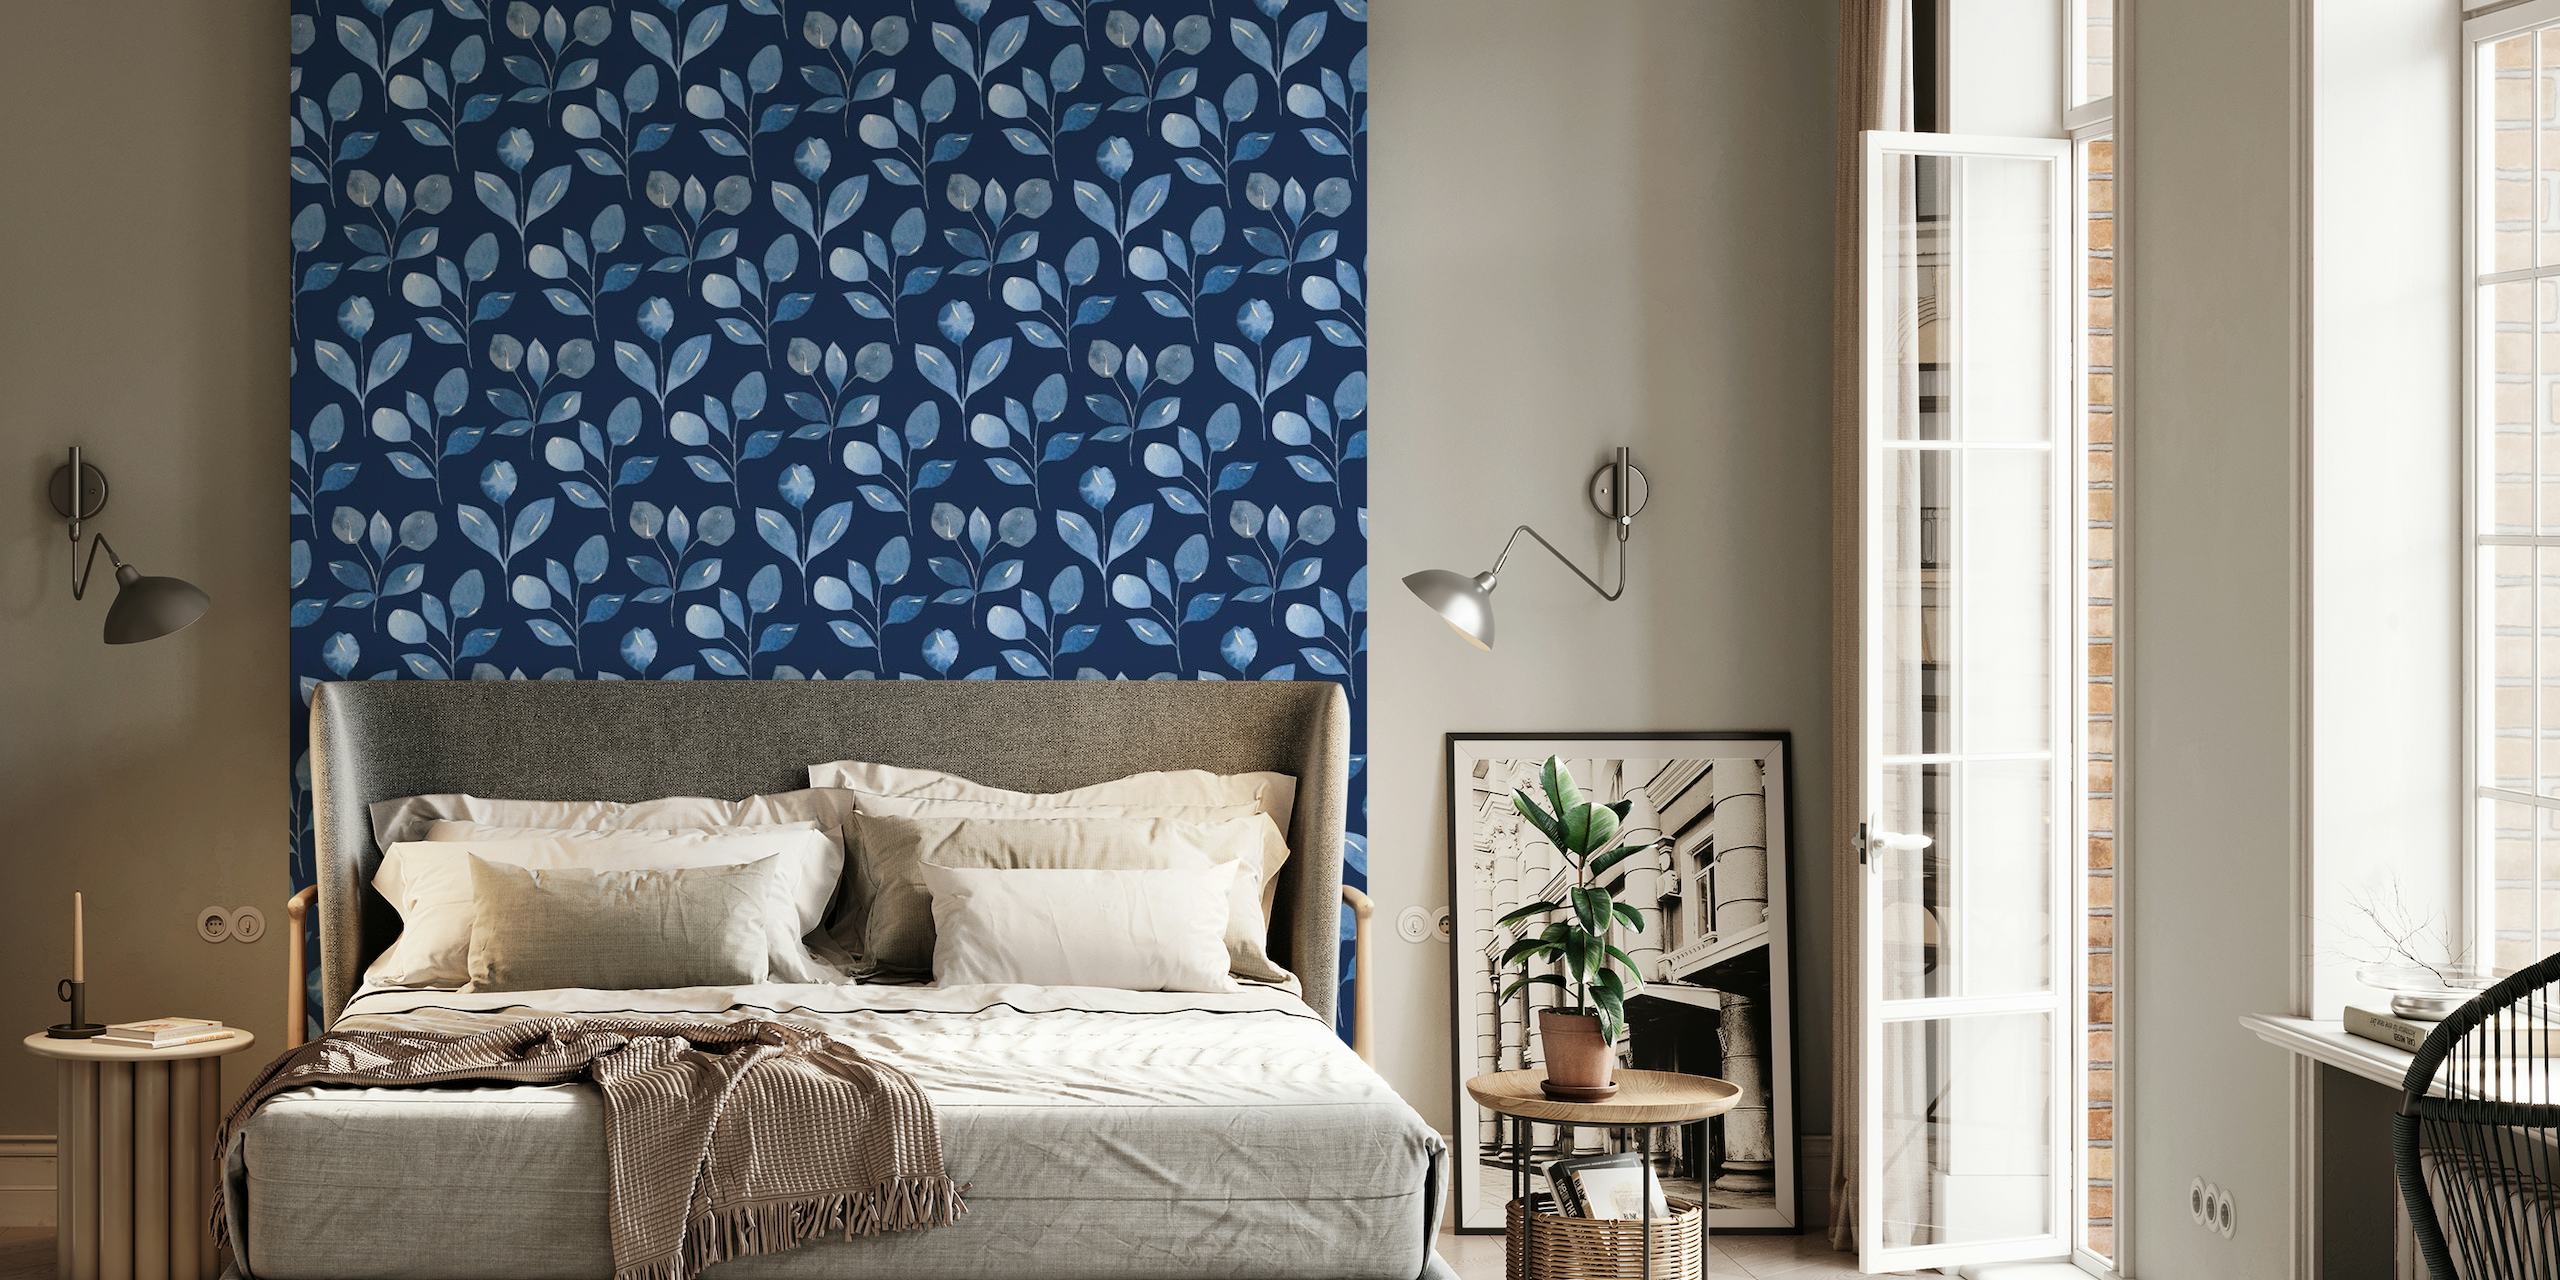 Et fredfyldt indigo-farvet vægmaleri med et mønster af stiliserede botaniske knopper til indretning.